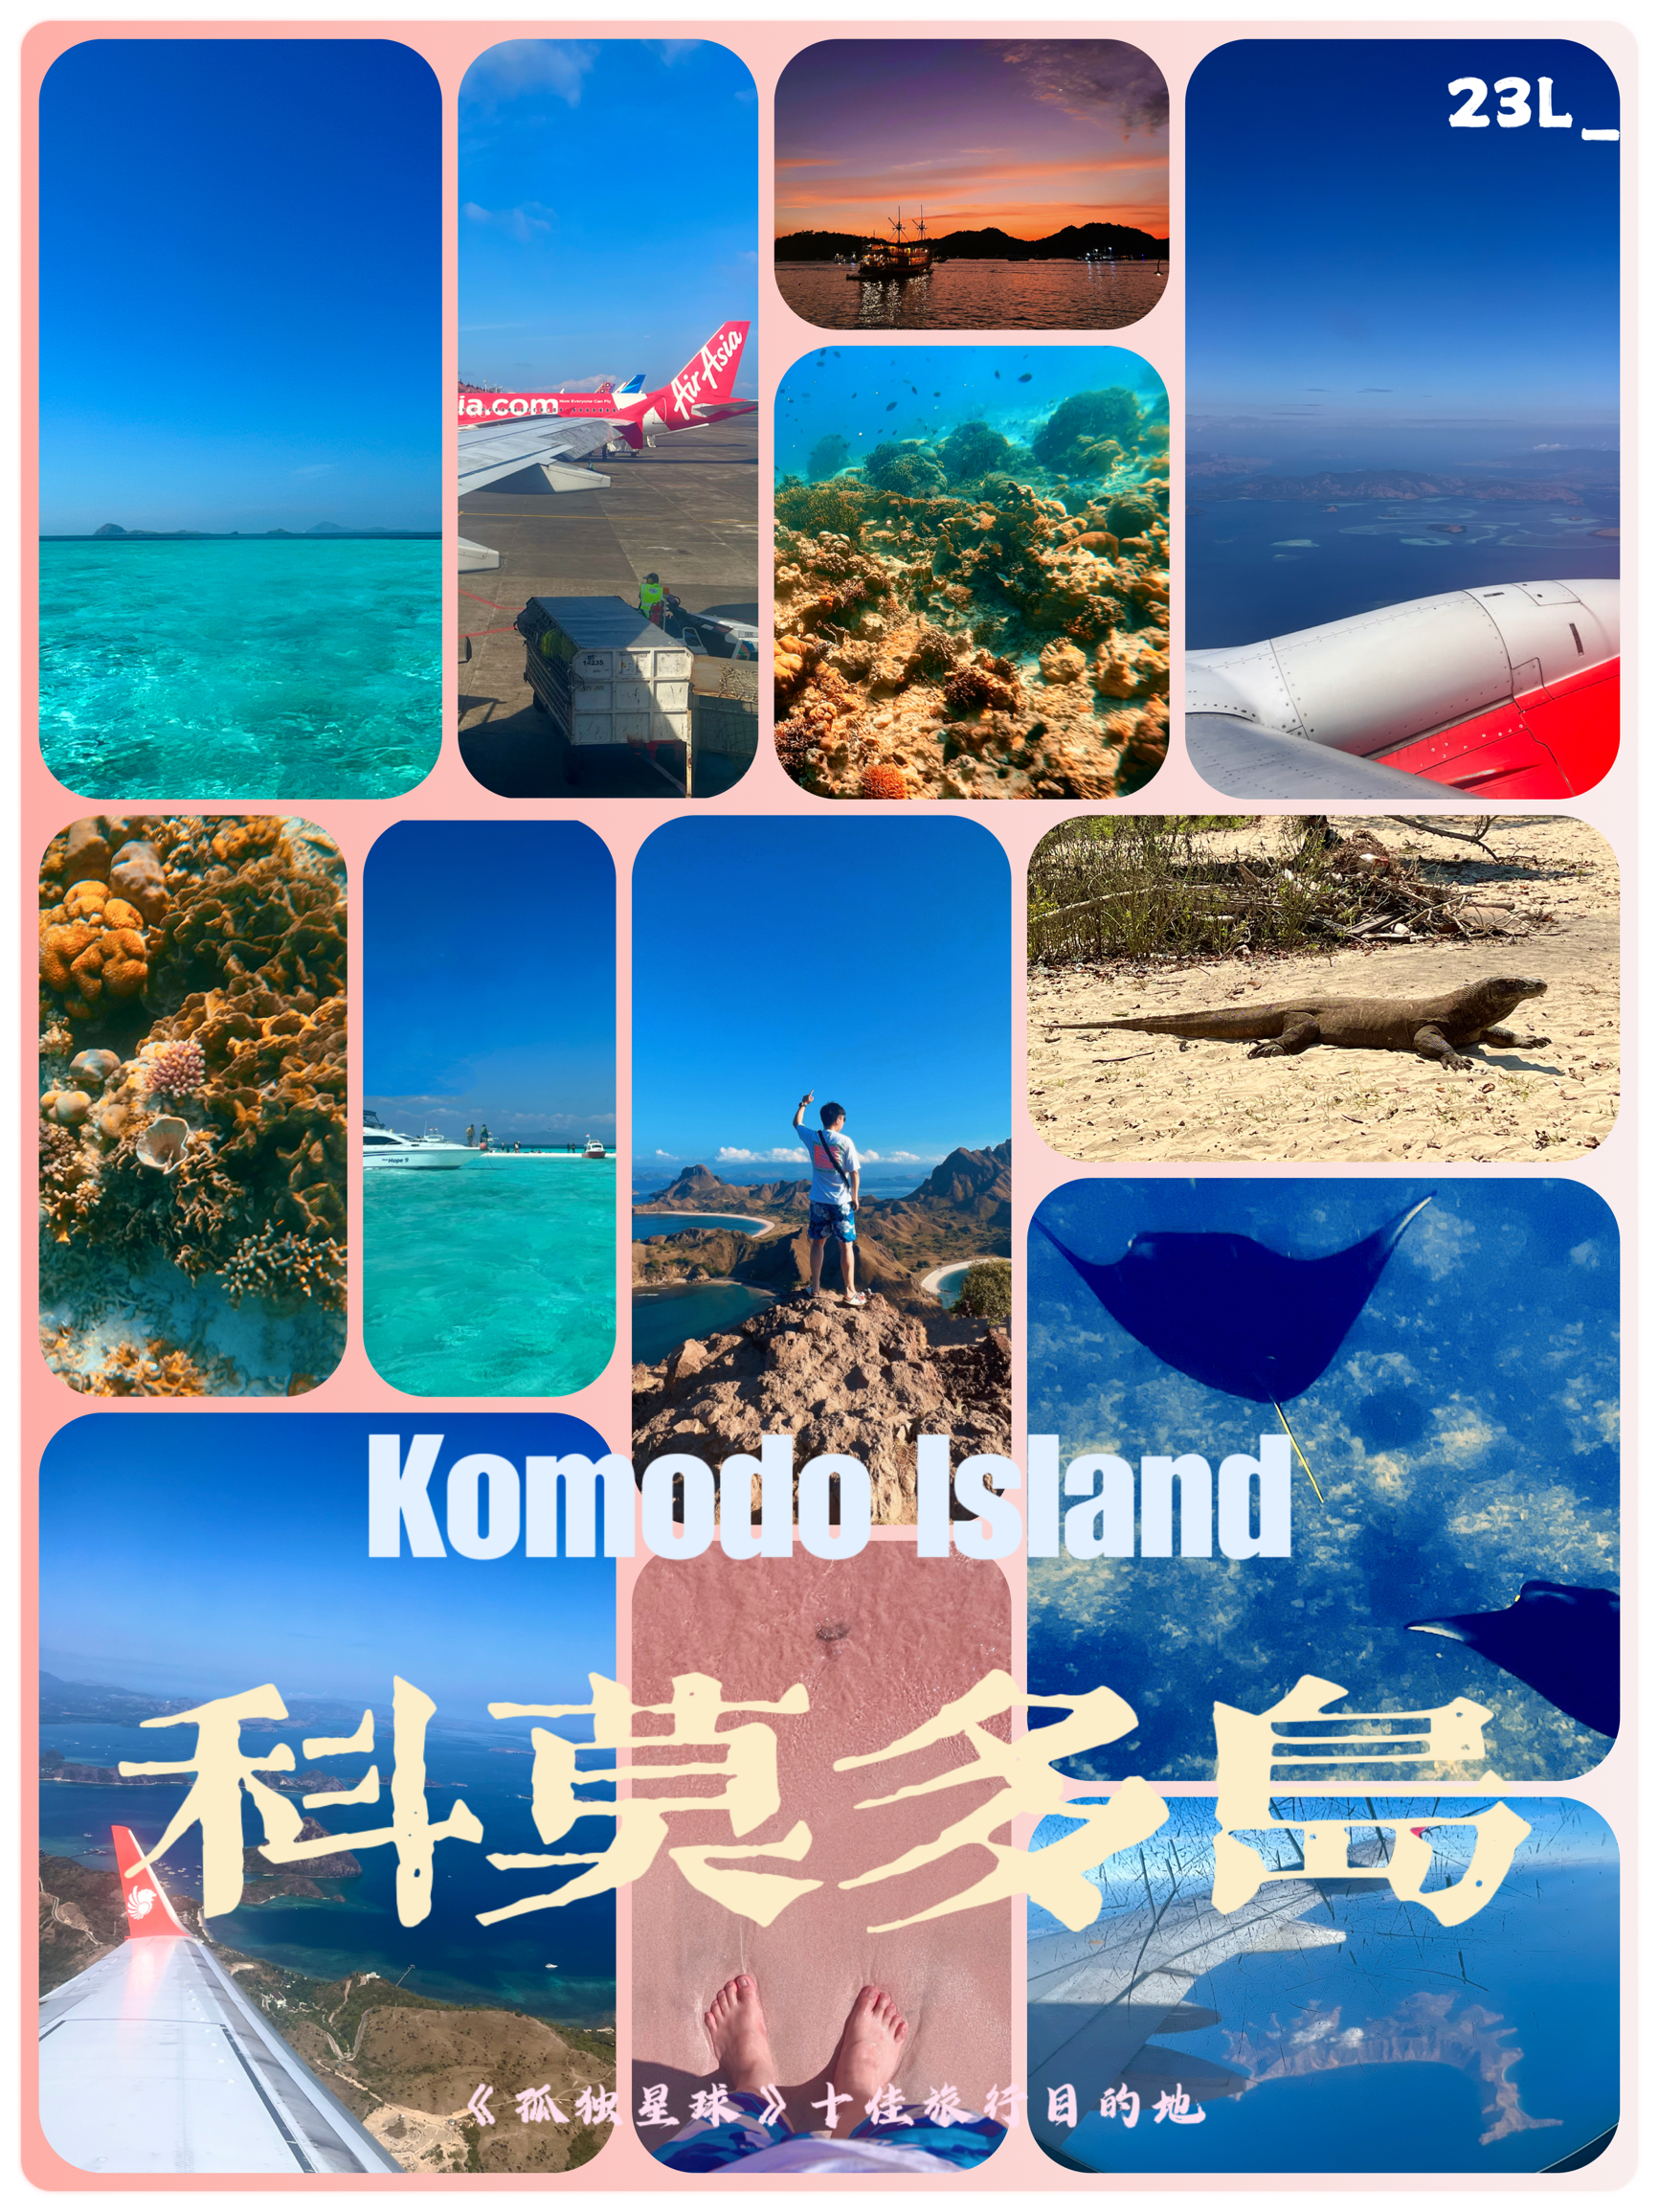 印尼科莫多岛｜粉红沙滩+科莫多龙+人间塞尔达🏖️